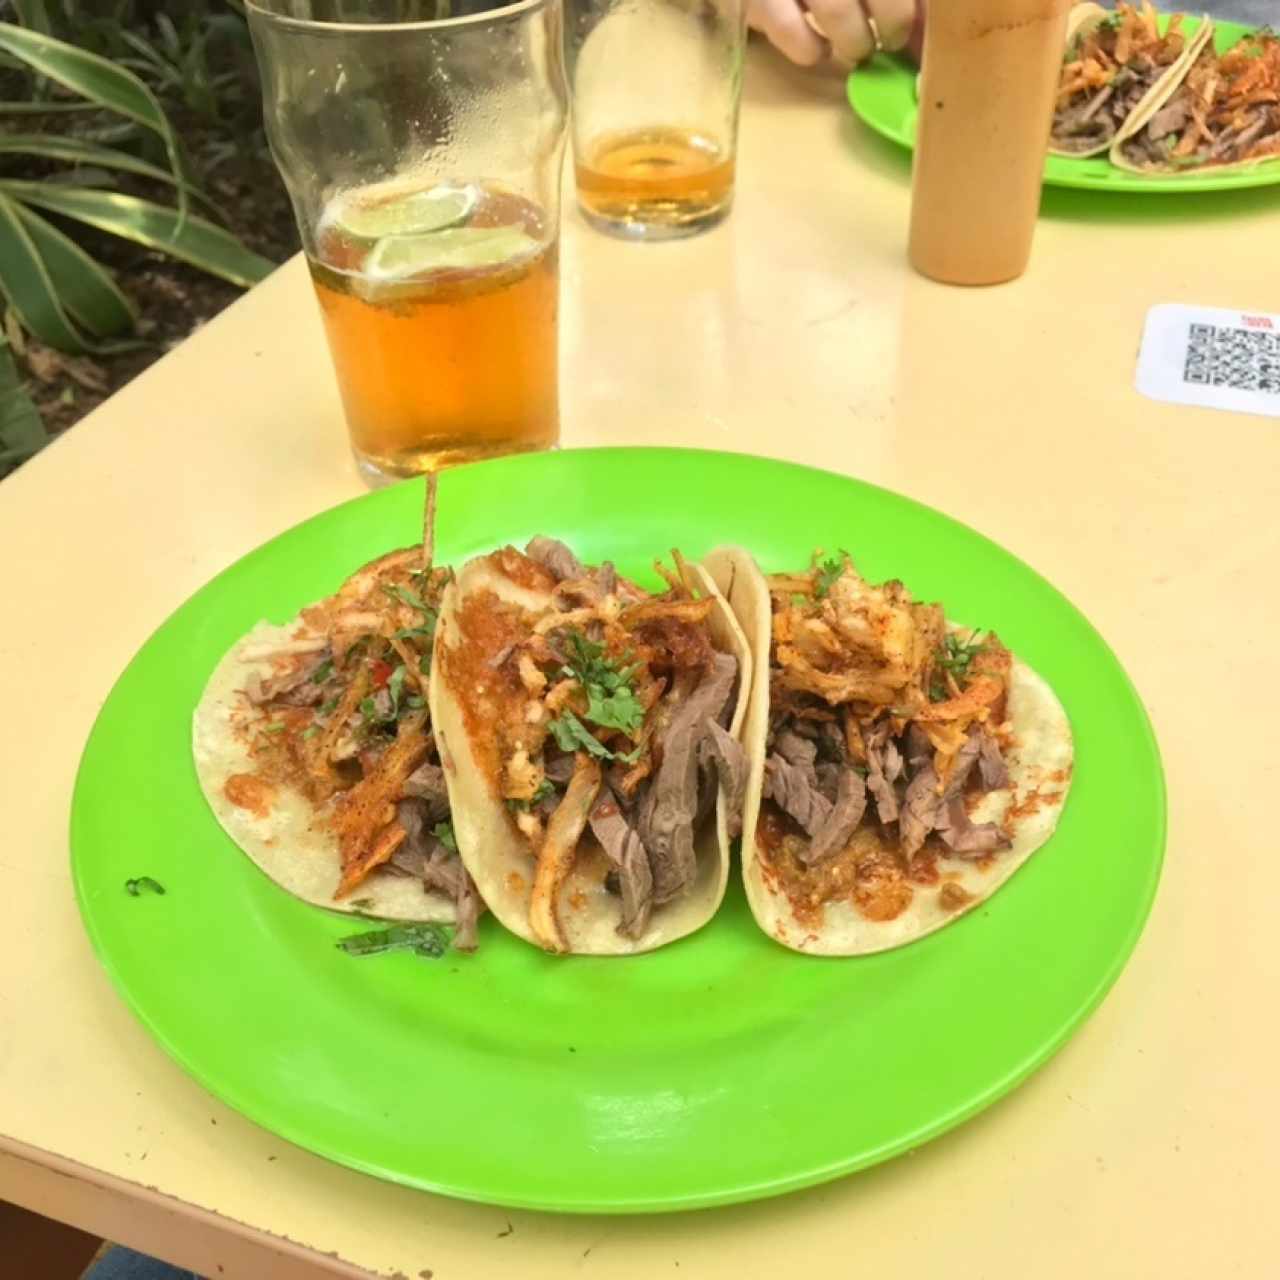 Tacos Tropicales - Carnitas